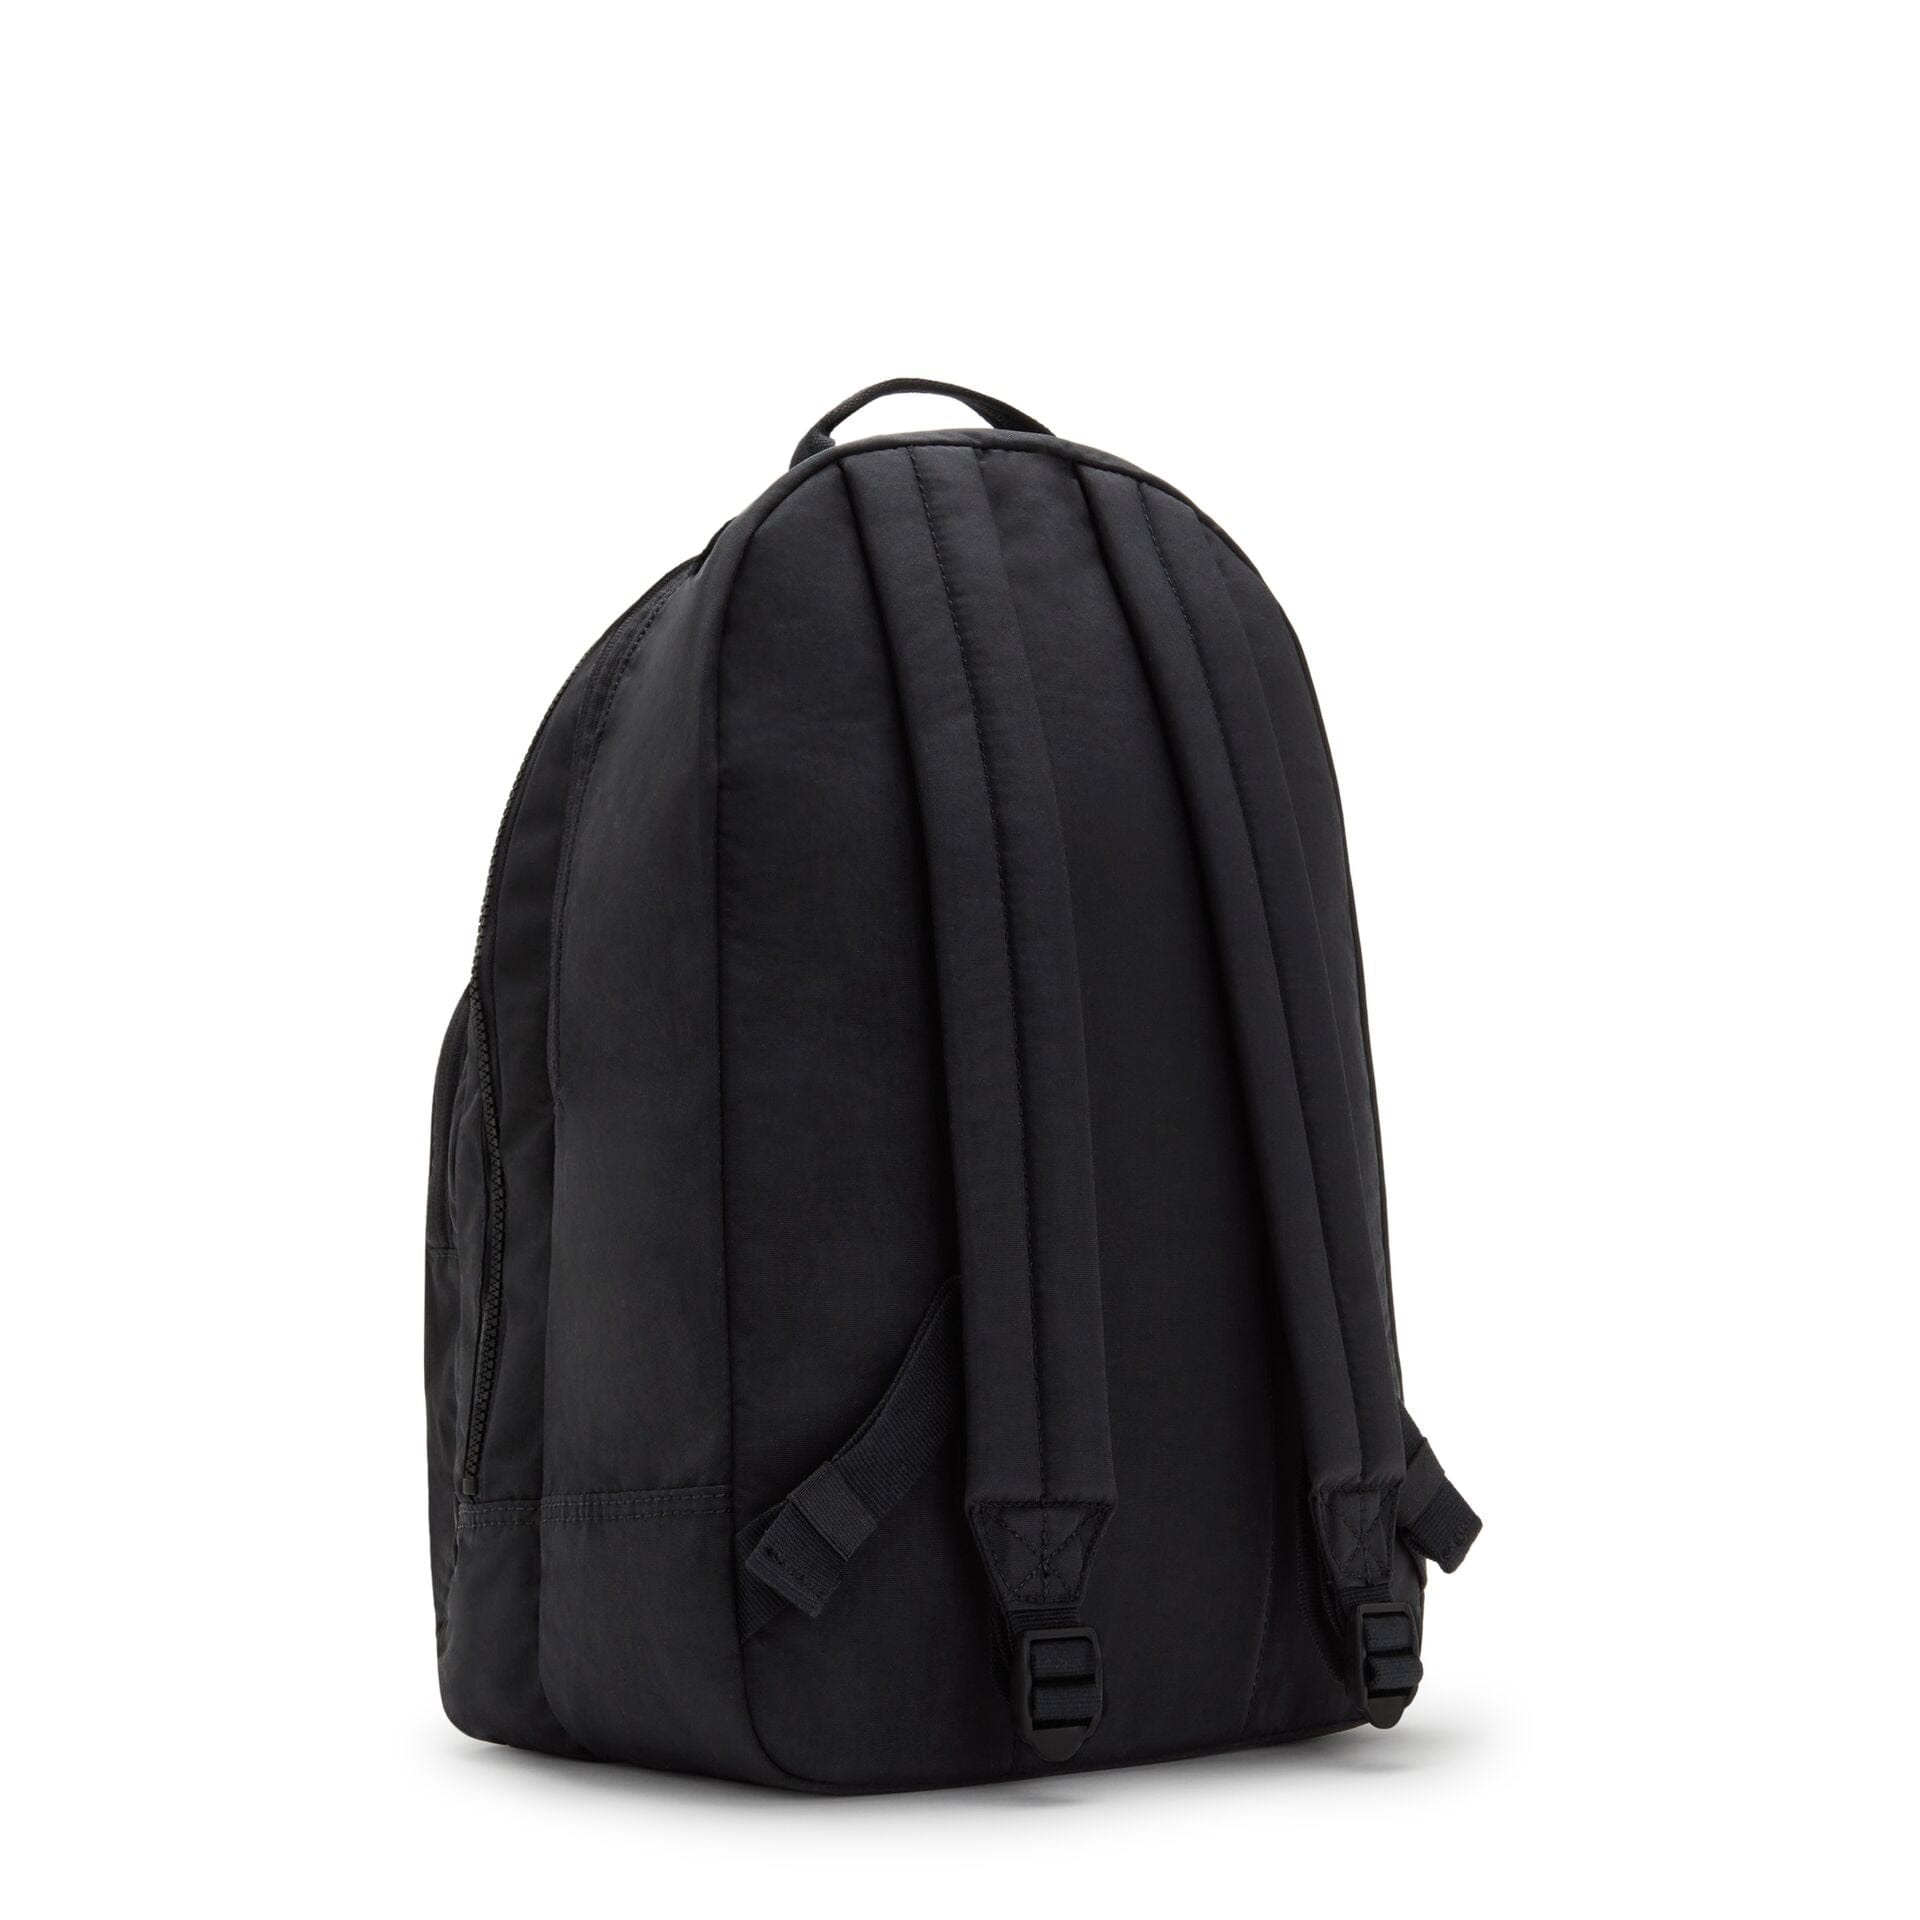 KIPLING-CURTIS XL-Large backpack-Black Lite-I5950-TL4